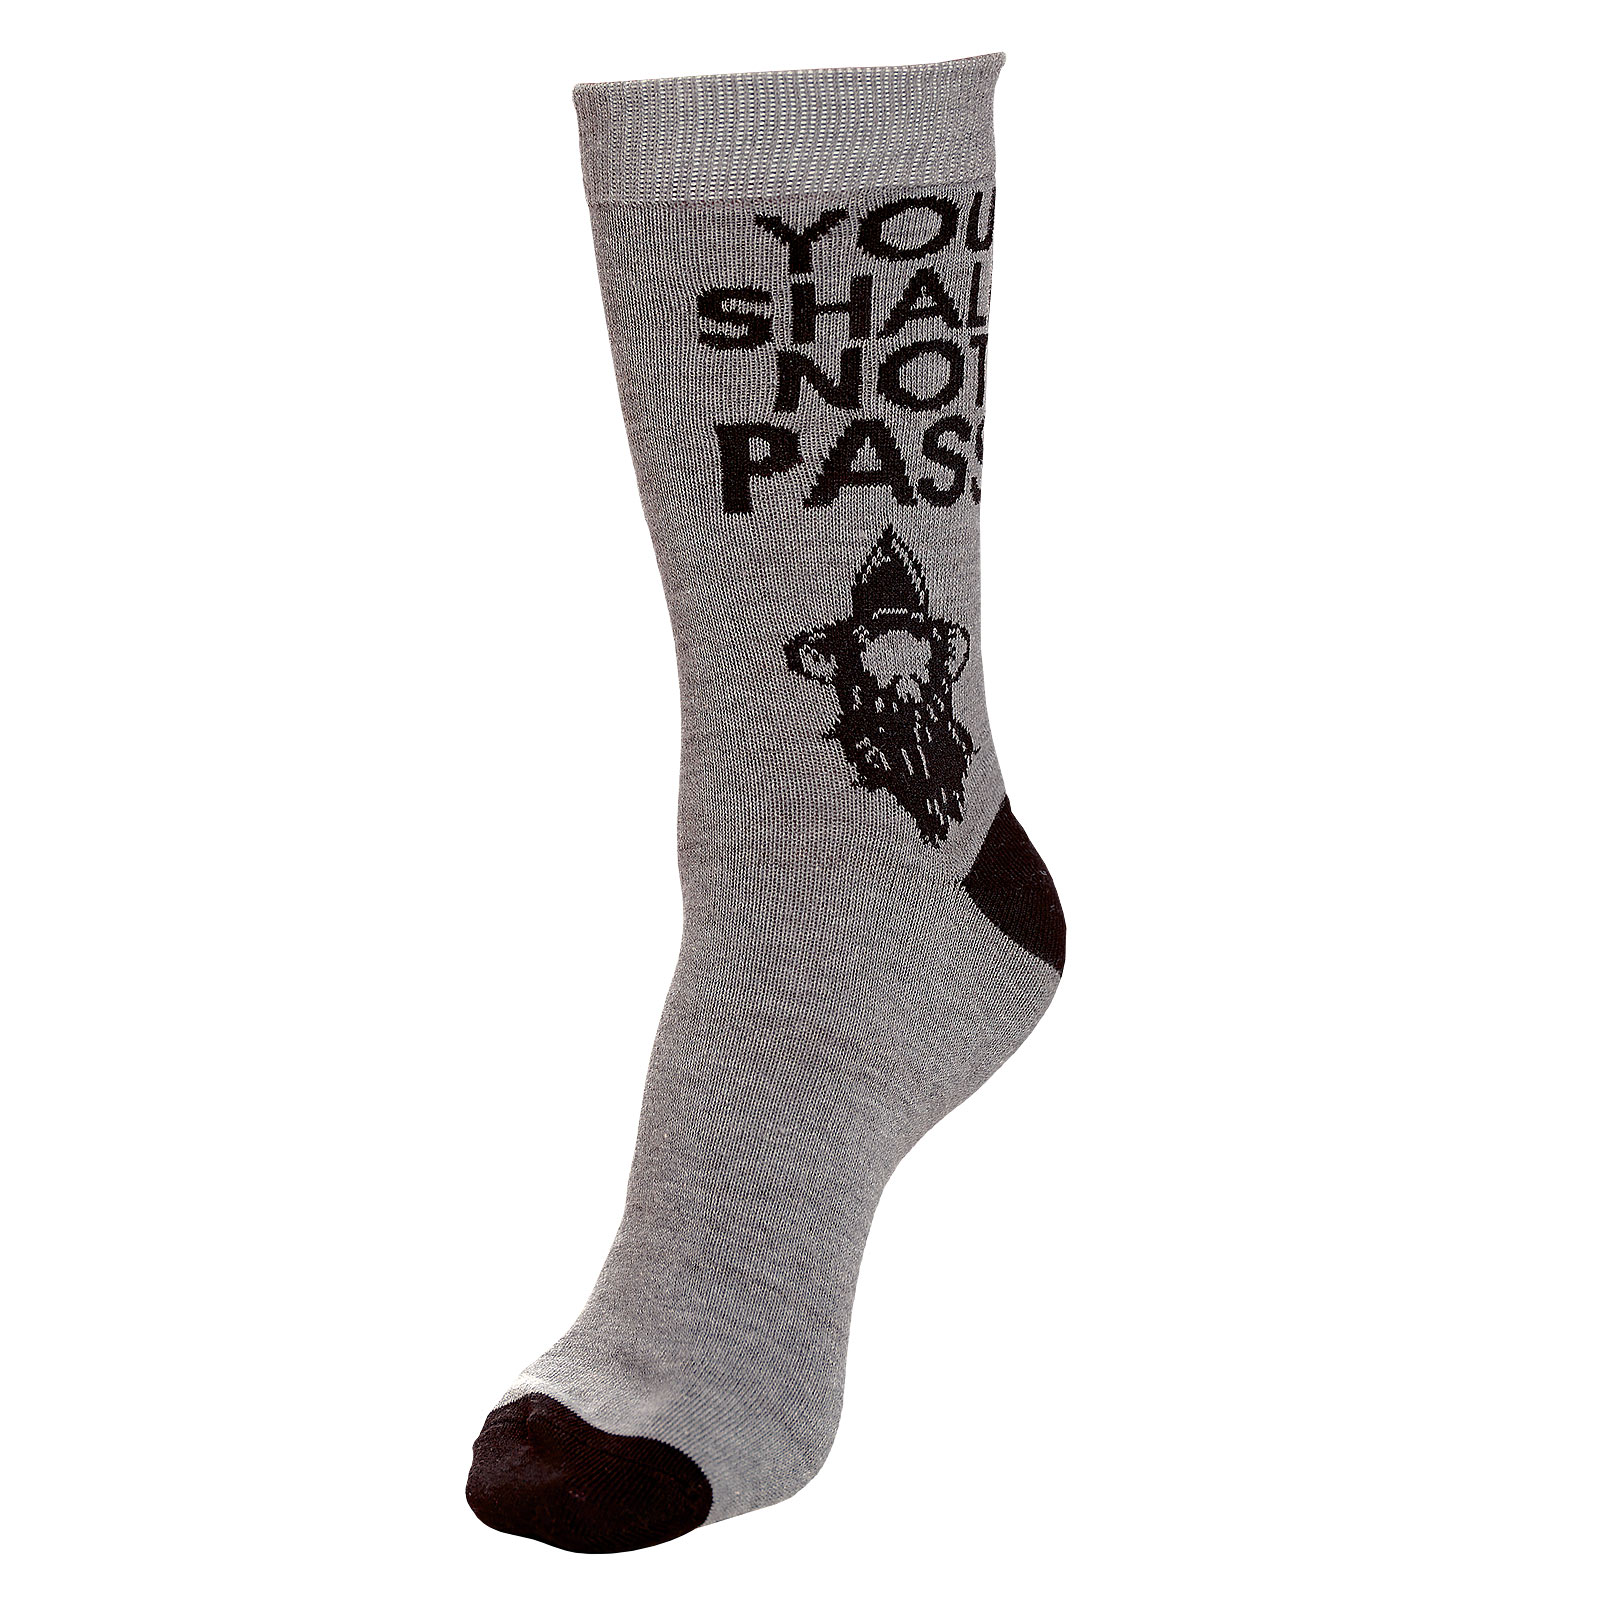 Herr der Ringe - You Shall Not Pass Socken